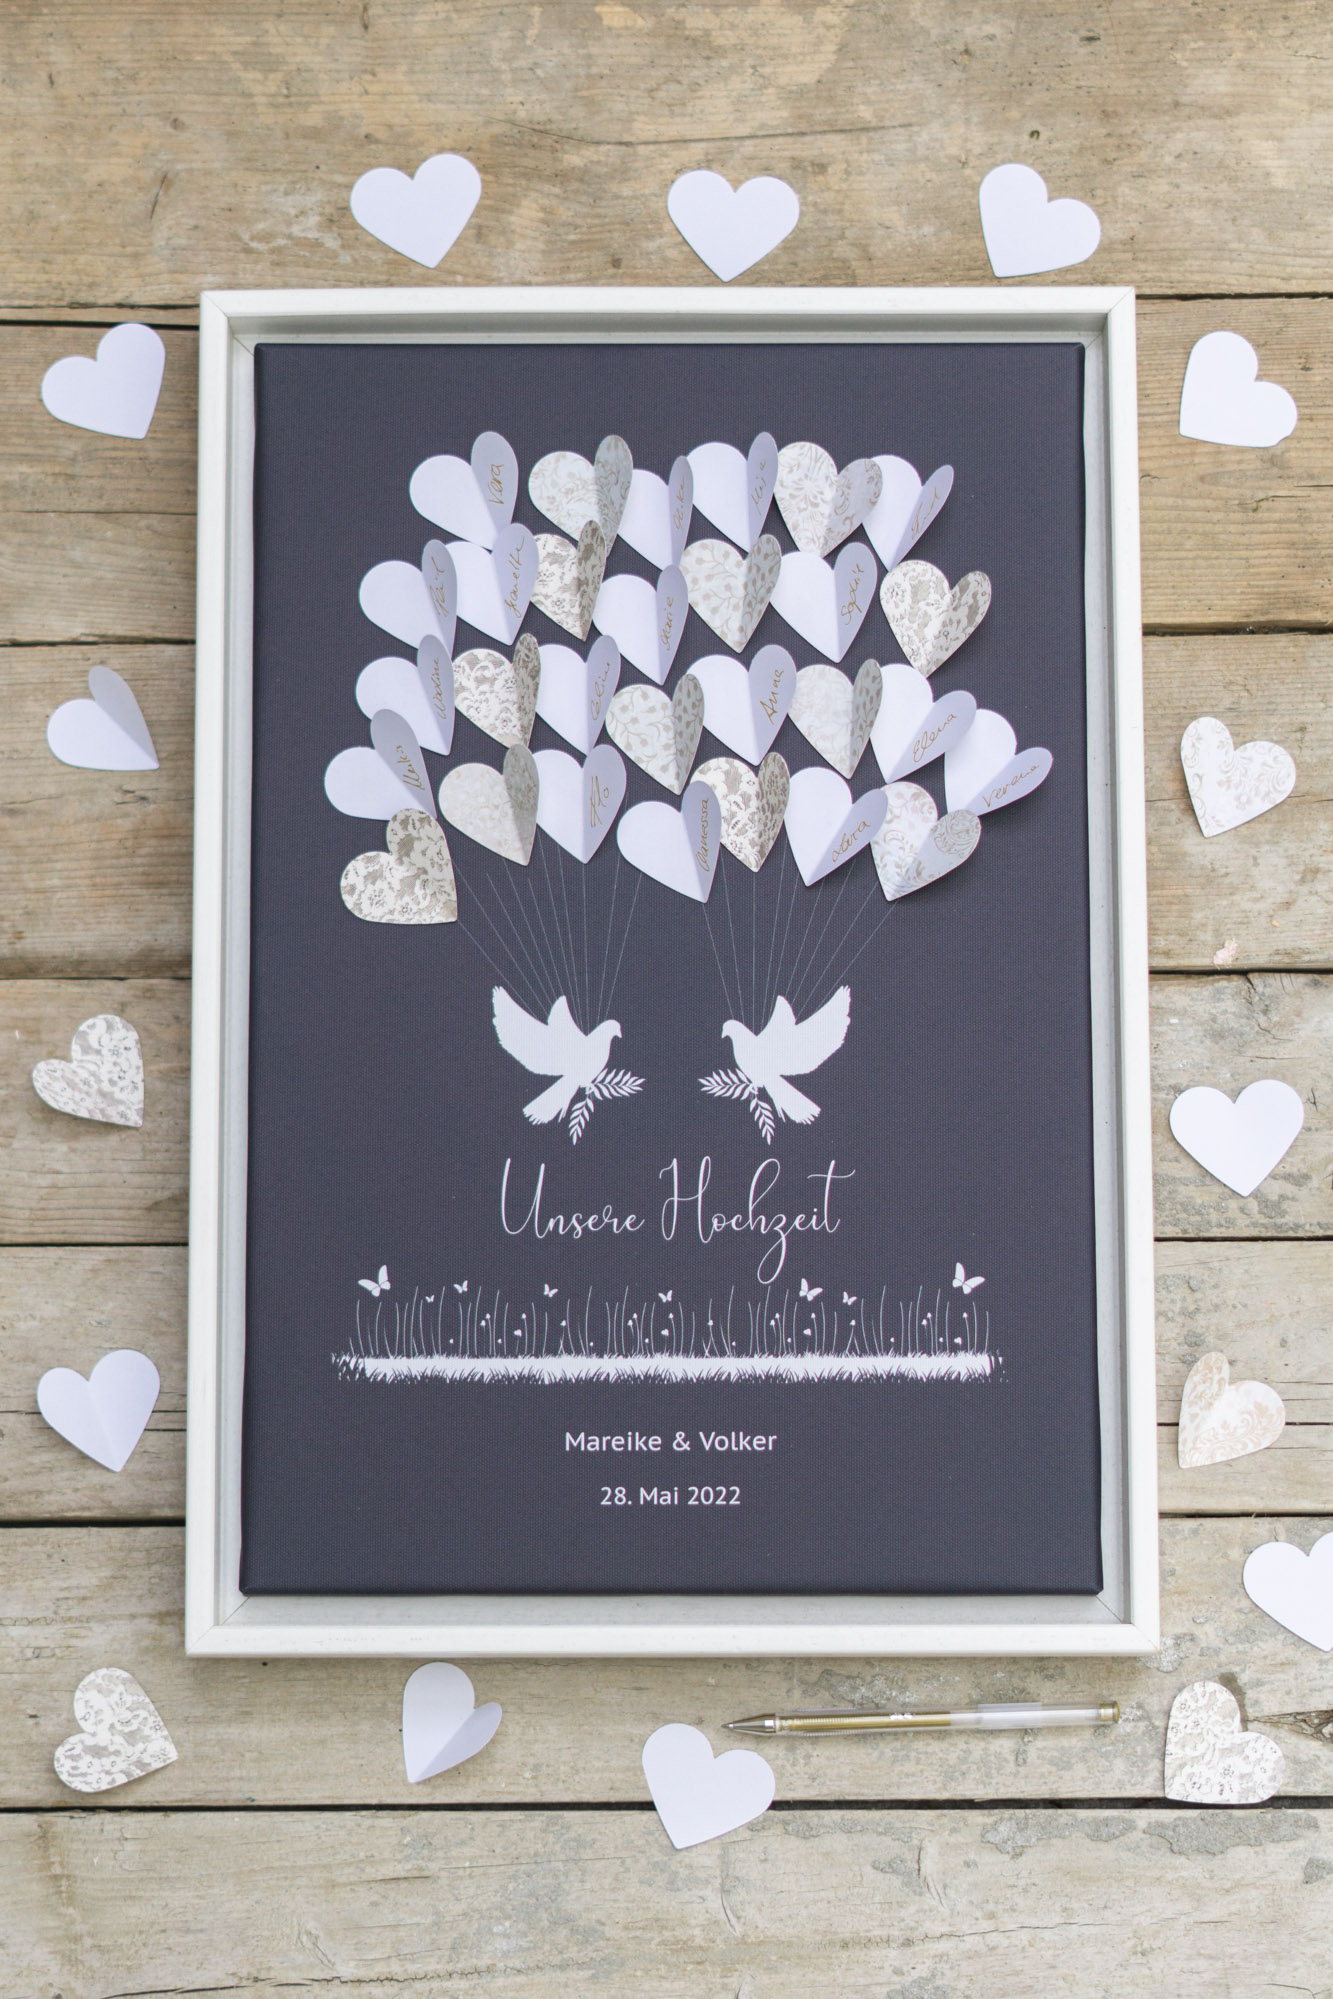 Weddingtree Gästebuch Leinwand Idee mit Herzen als Geschenk Erinnerung zur Hochzeit fürs Brautpaar